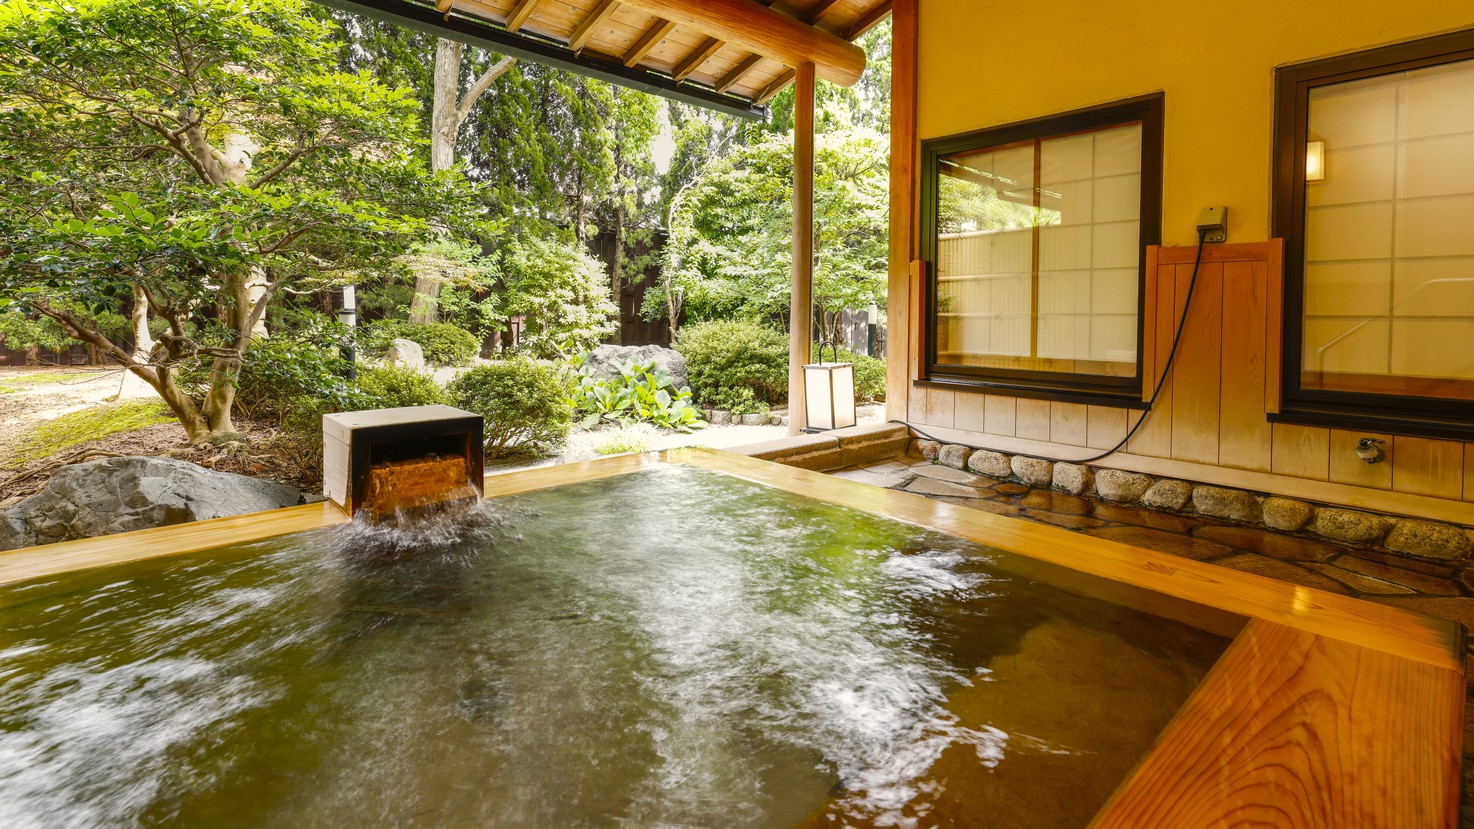 【西離れ】西離れの温泉露天風呂付客室で、庭園を見ながらゆったりとプライベートな時間を過ごして。